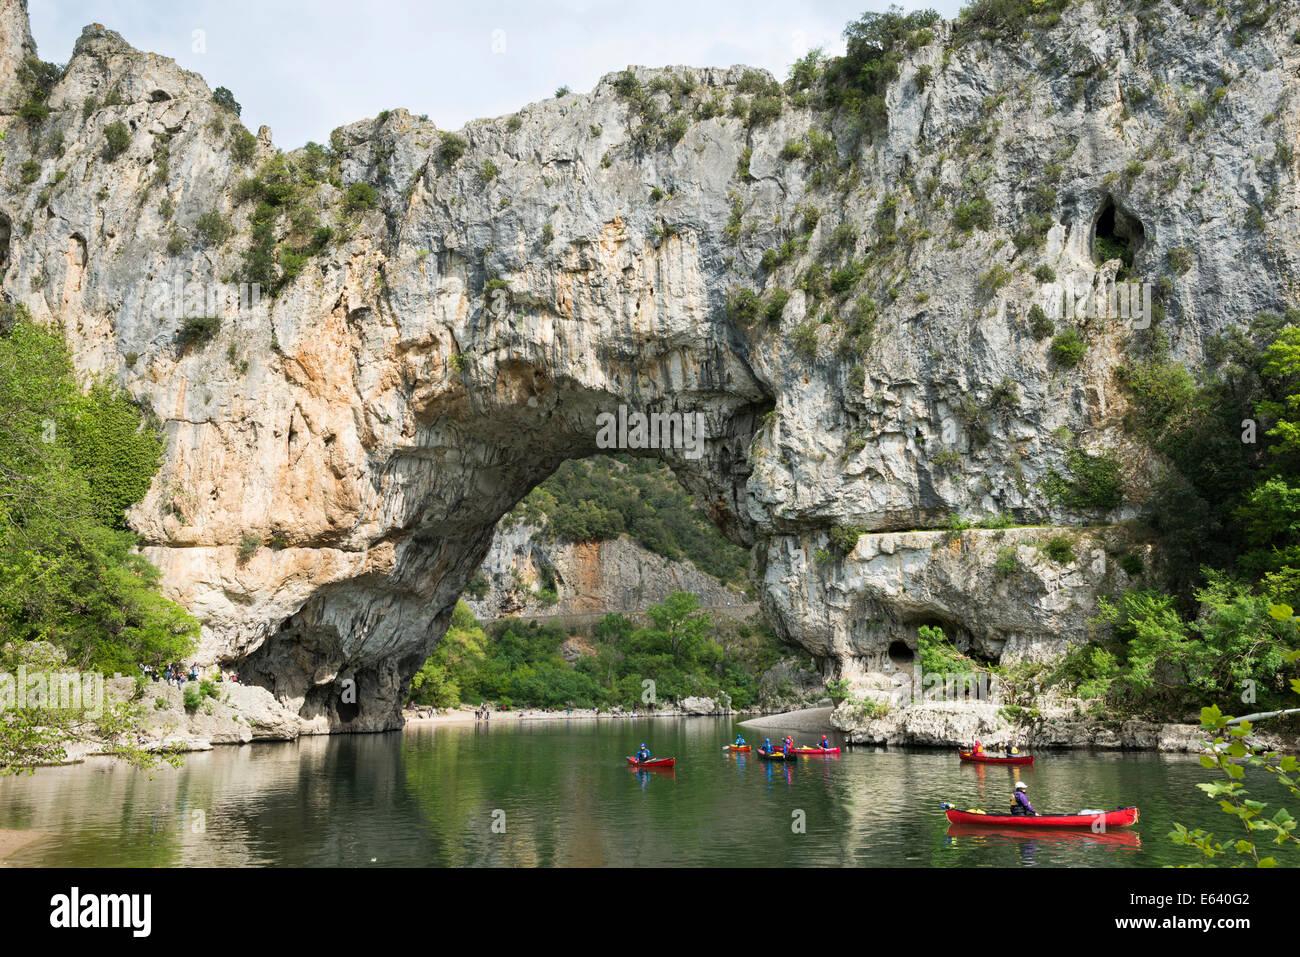 Pont d'Arc, arche naturelle sur la rivière Ardèche, gorges de l'Ardèche, gorges de l'Ardèche, à Vallon-Pont d'Arc, Rhône-Alpes Banque D'Images